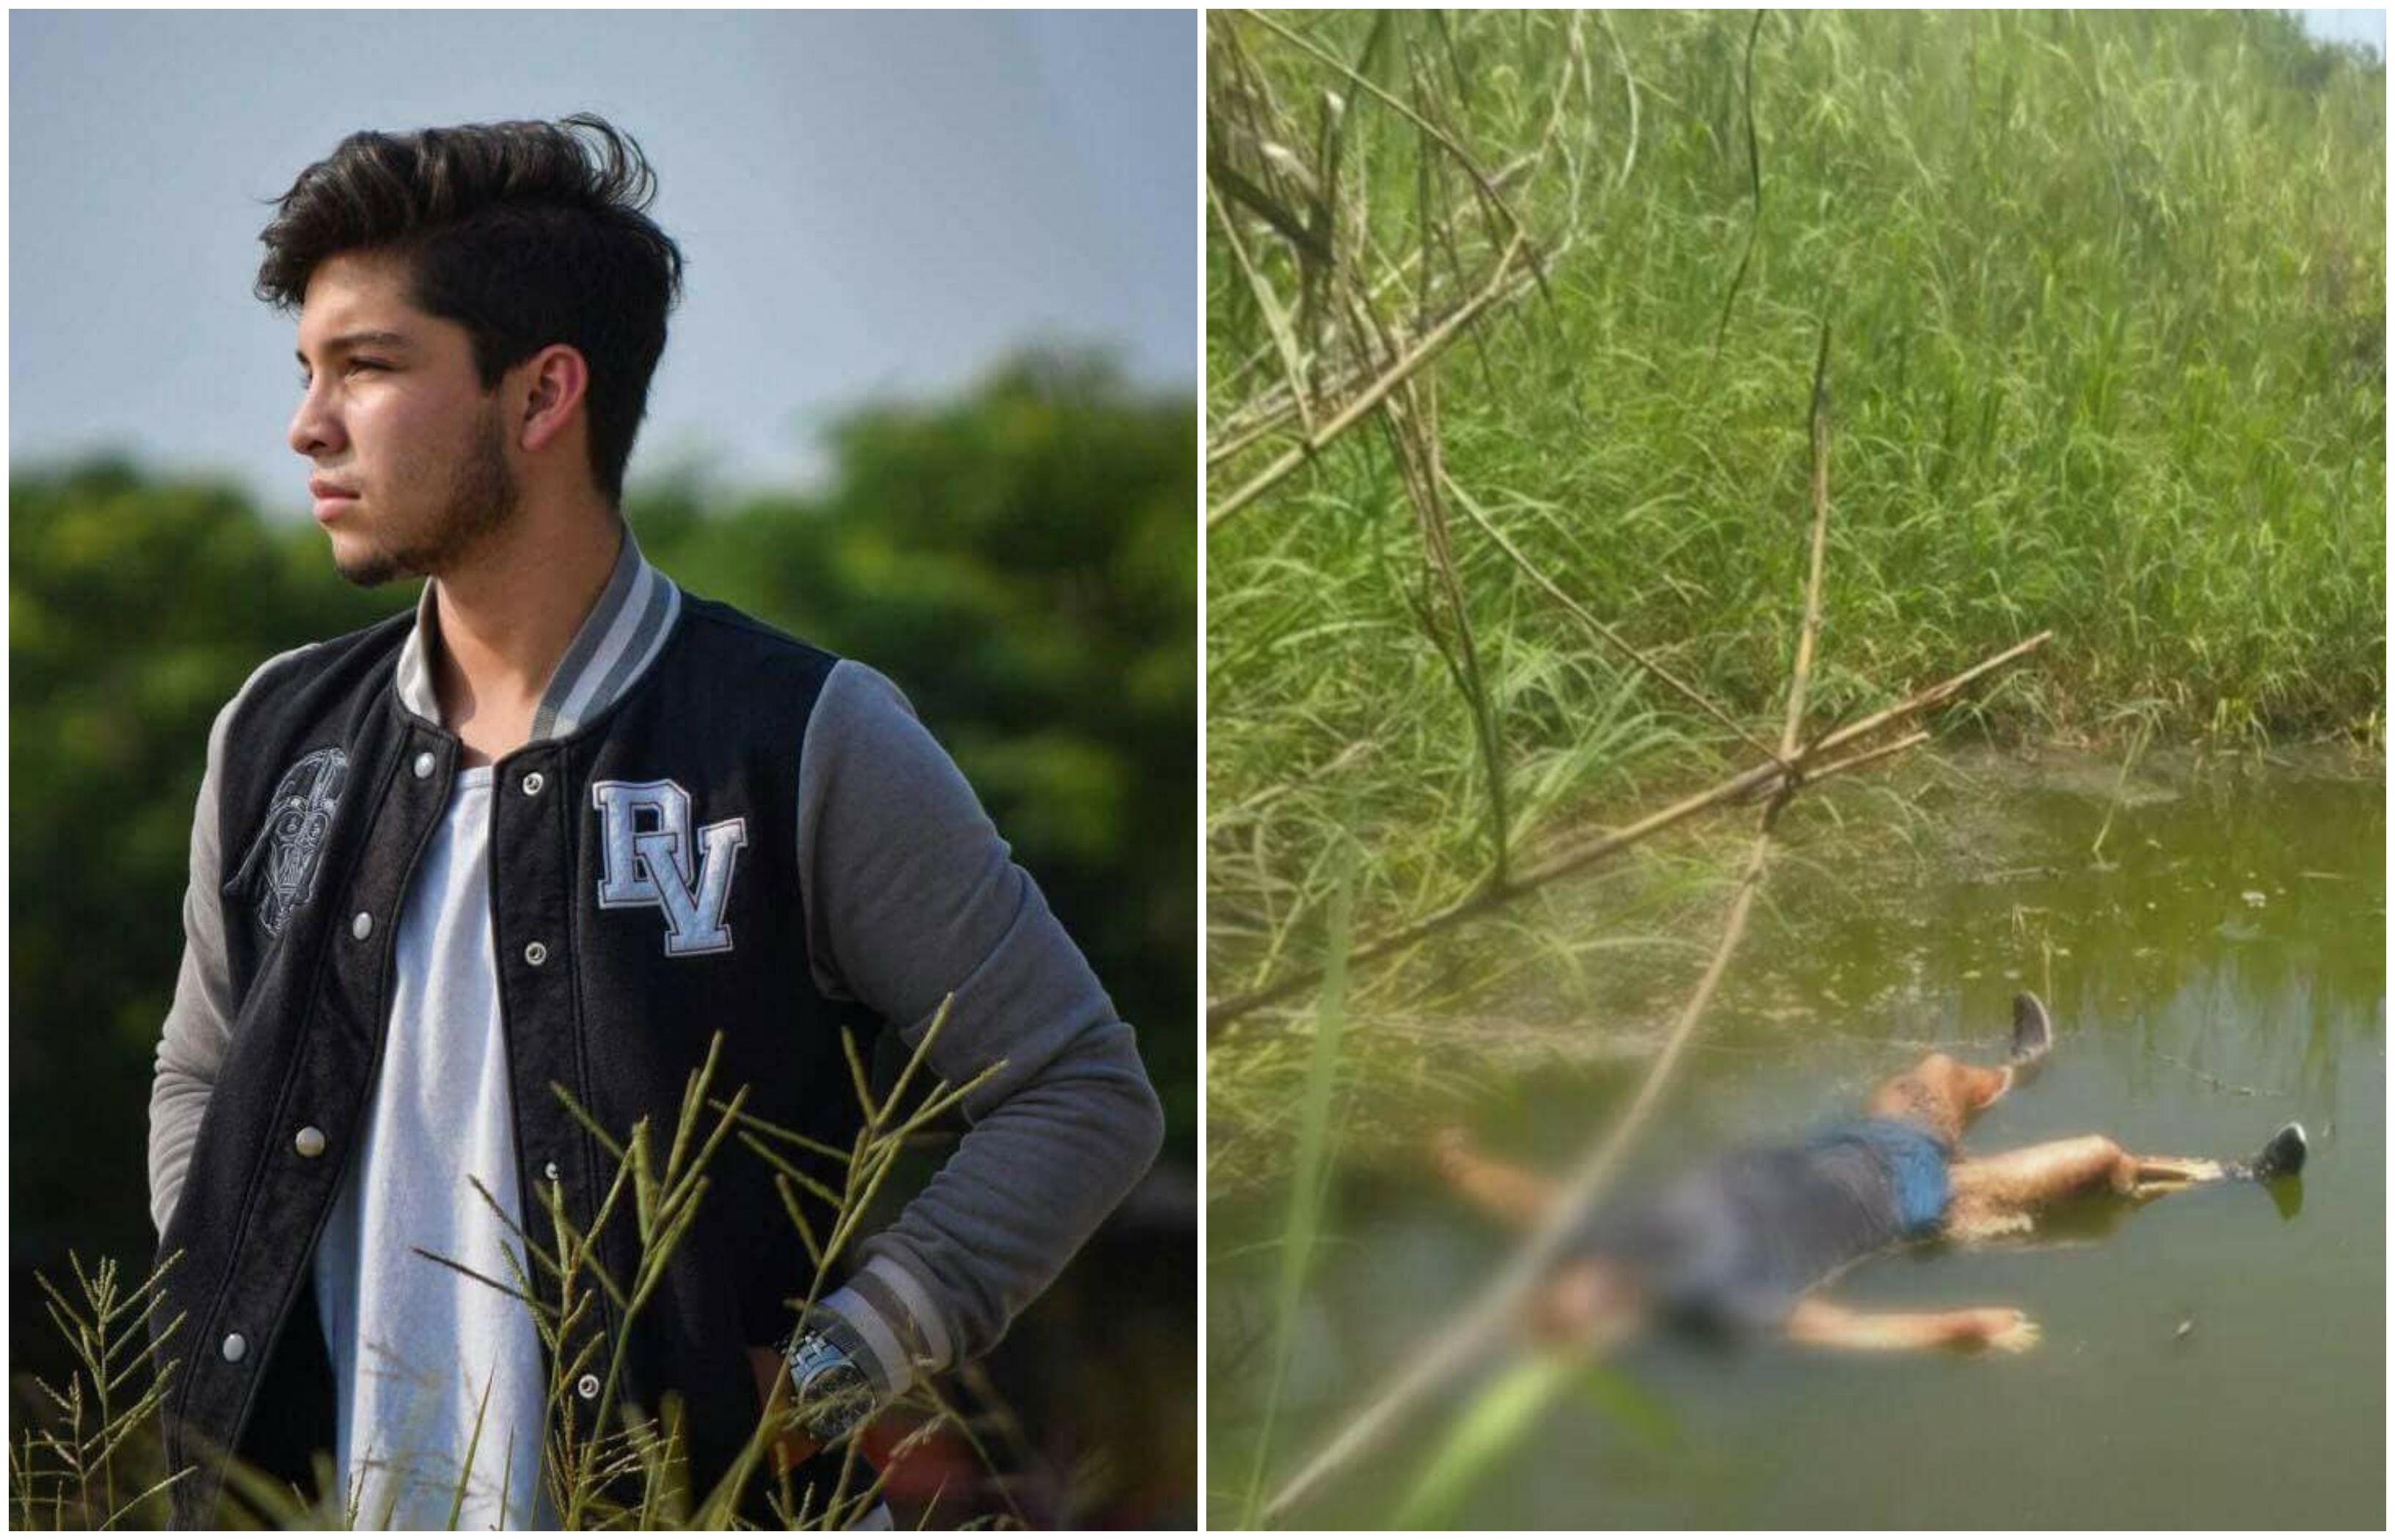 Estudiante secuestrado en México descubierto flotando en un río con los cuerpos de dos personas más